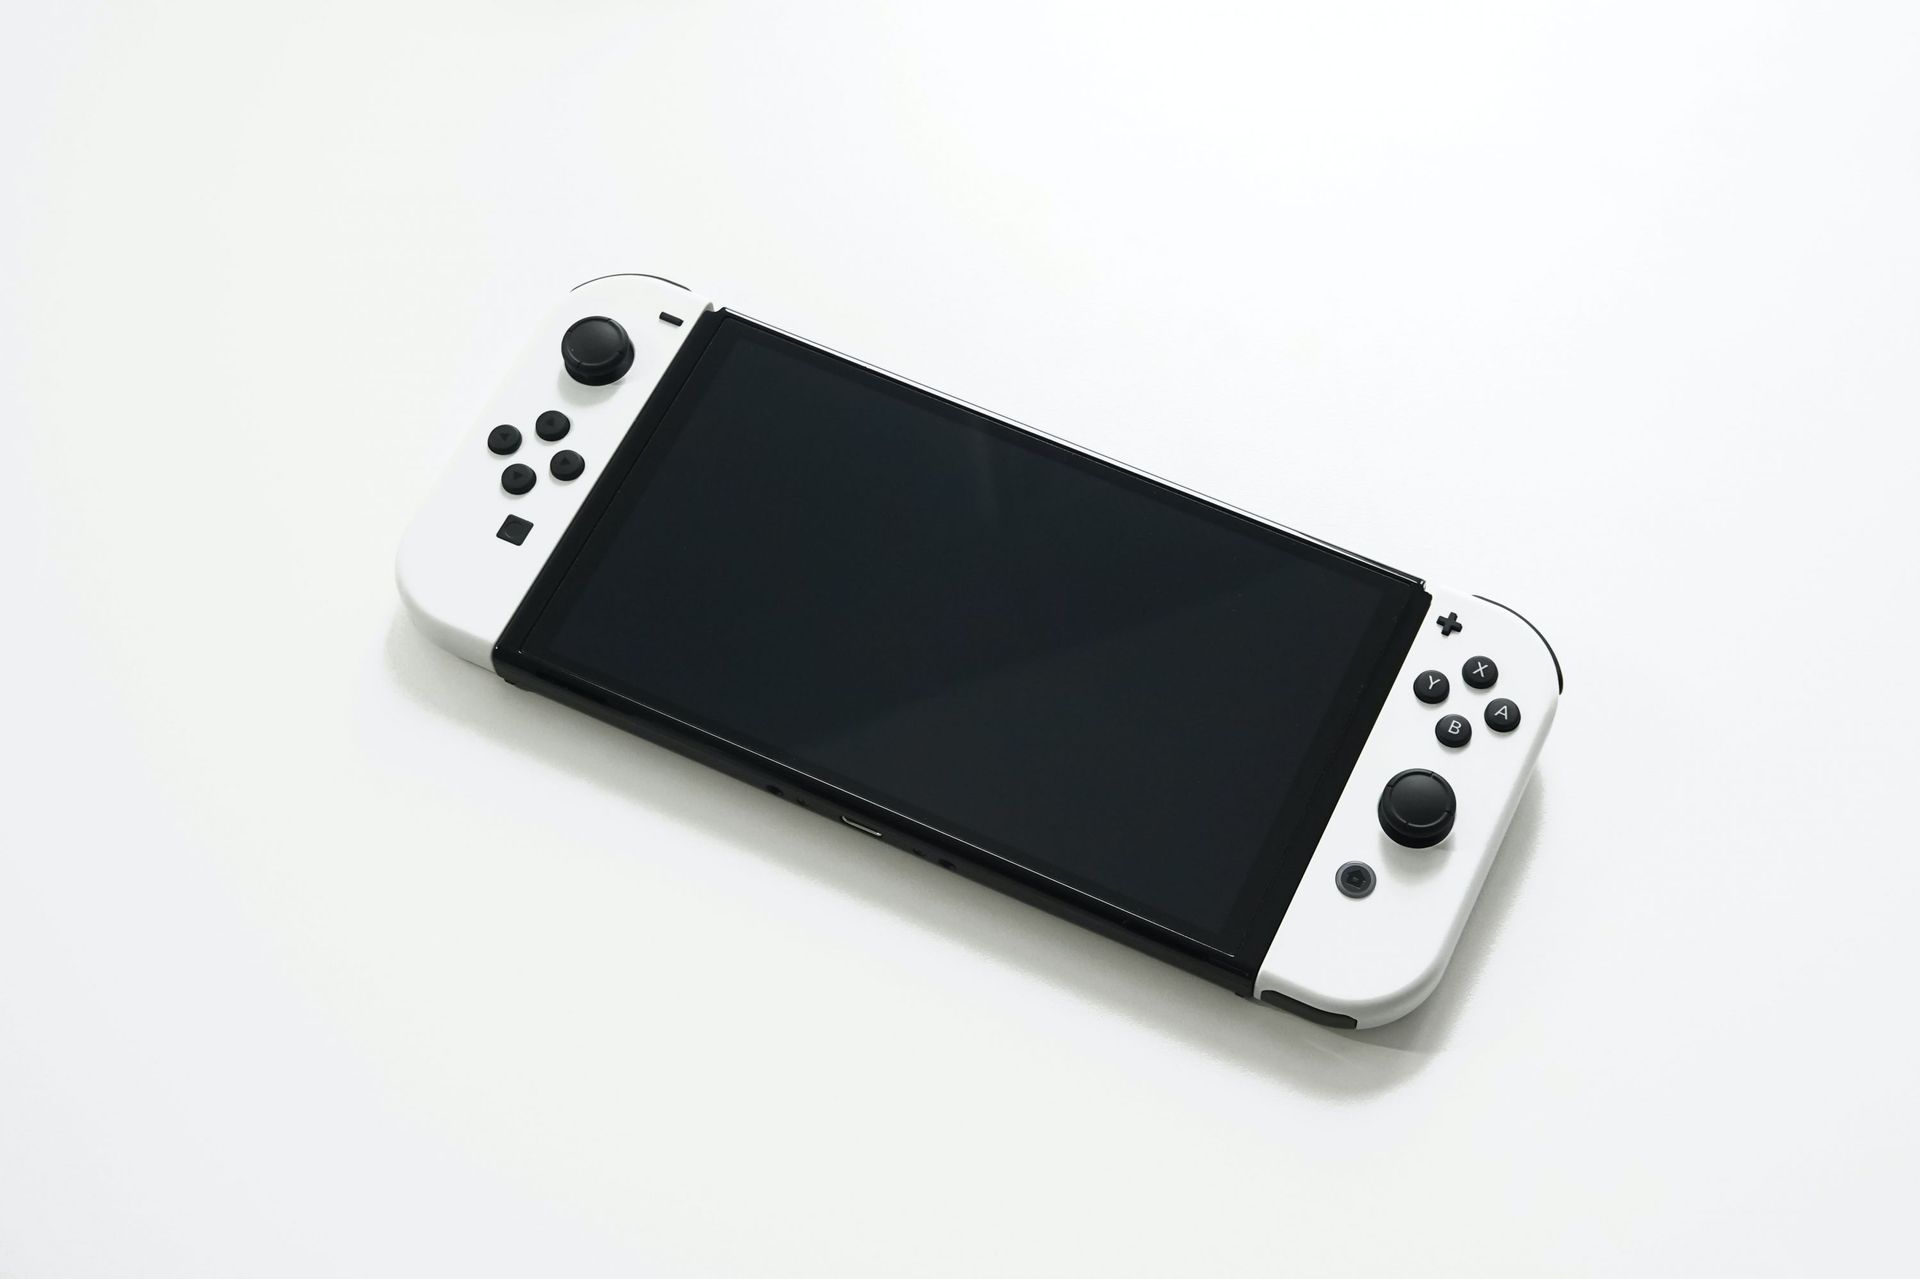 Nintendo Switch Gris - Console de jeux - Modèle 2019